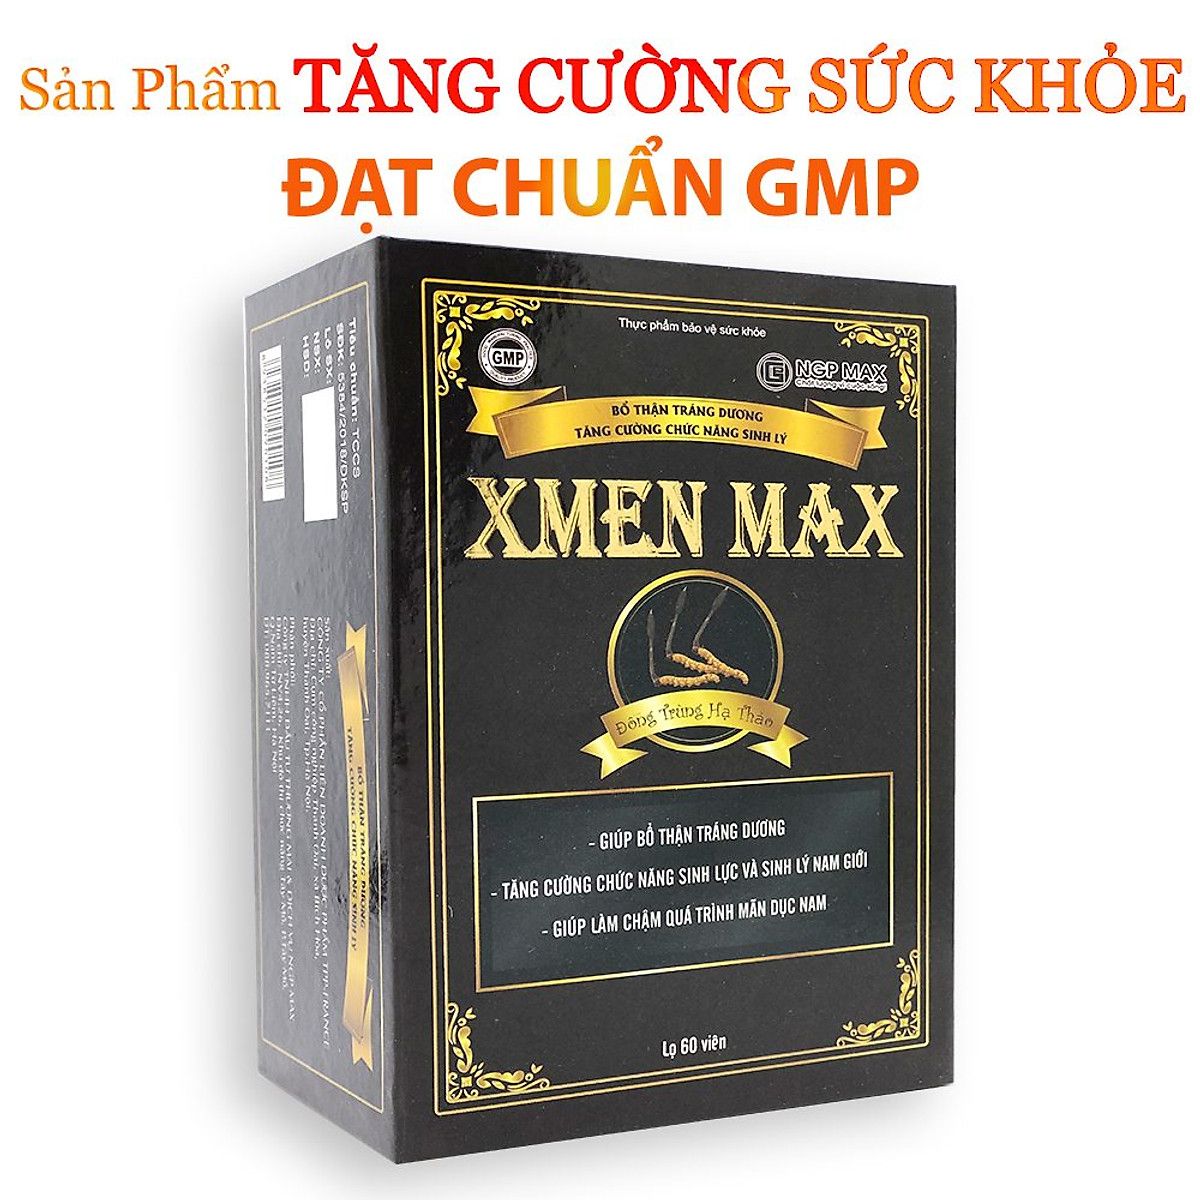 Viên uống tăng cường sức khỏe XMEN MAX - Hàng Chính Hãng